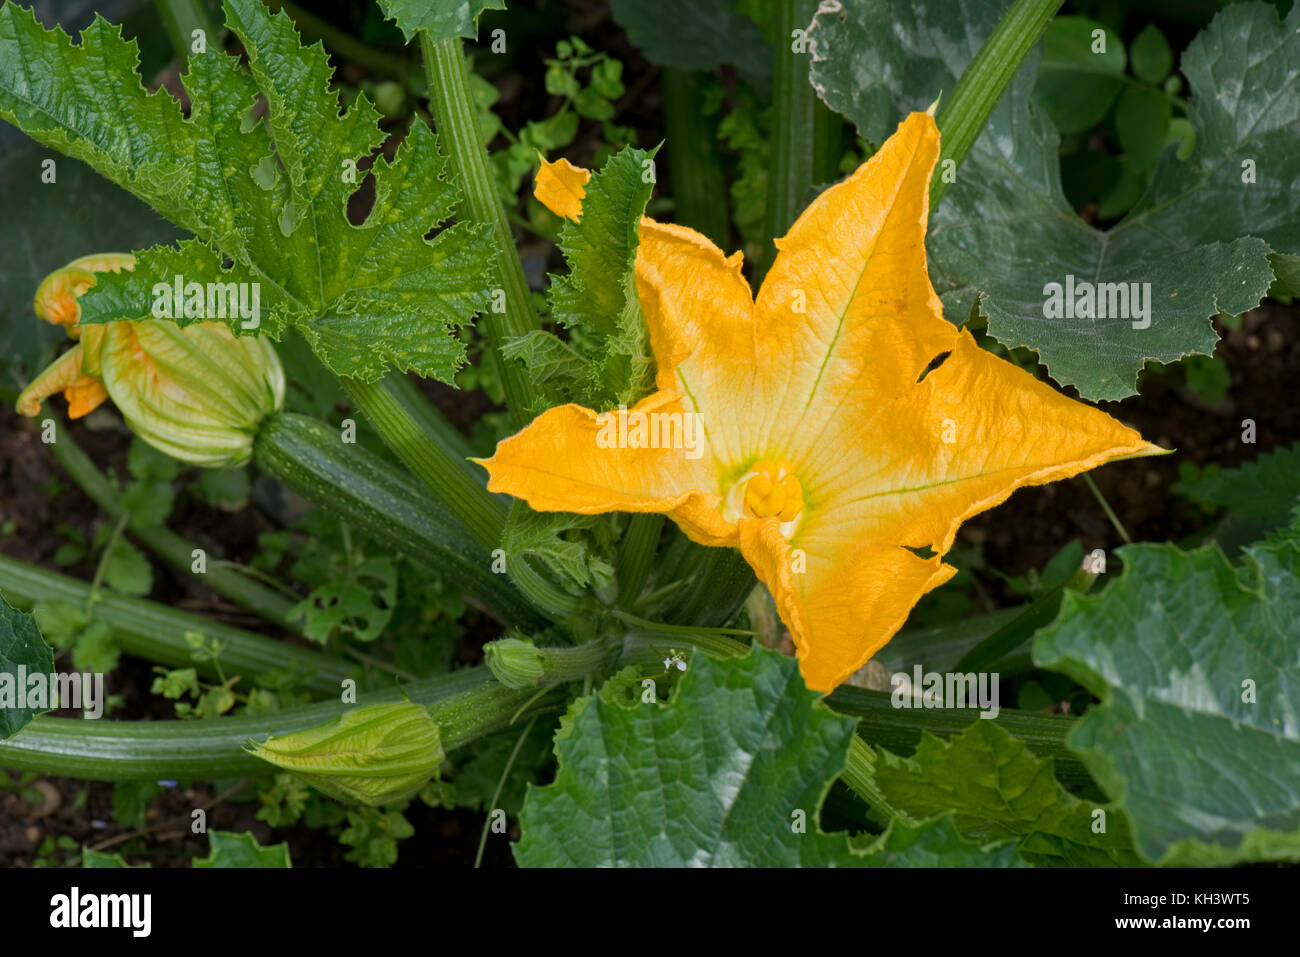 Amarillo flores masculinas y femeninas en un Calabacín Calabacín o planta con fruta joven desarrollando bajo bold cucurbit tipo hojas verde oscuro Foto de stock